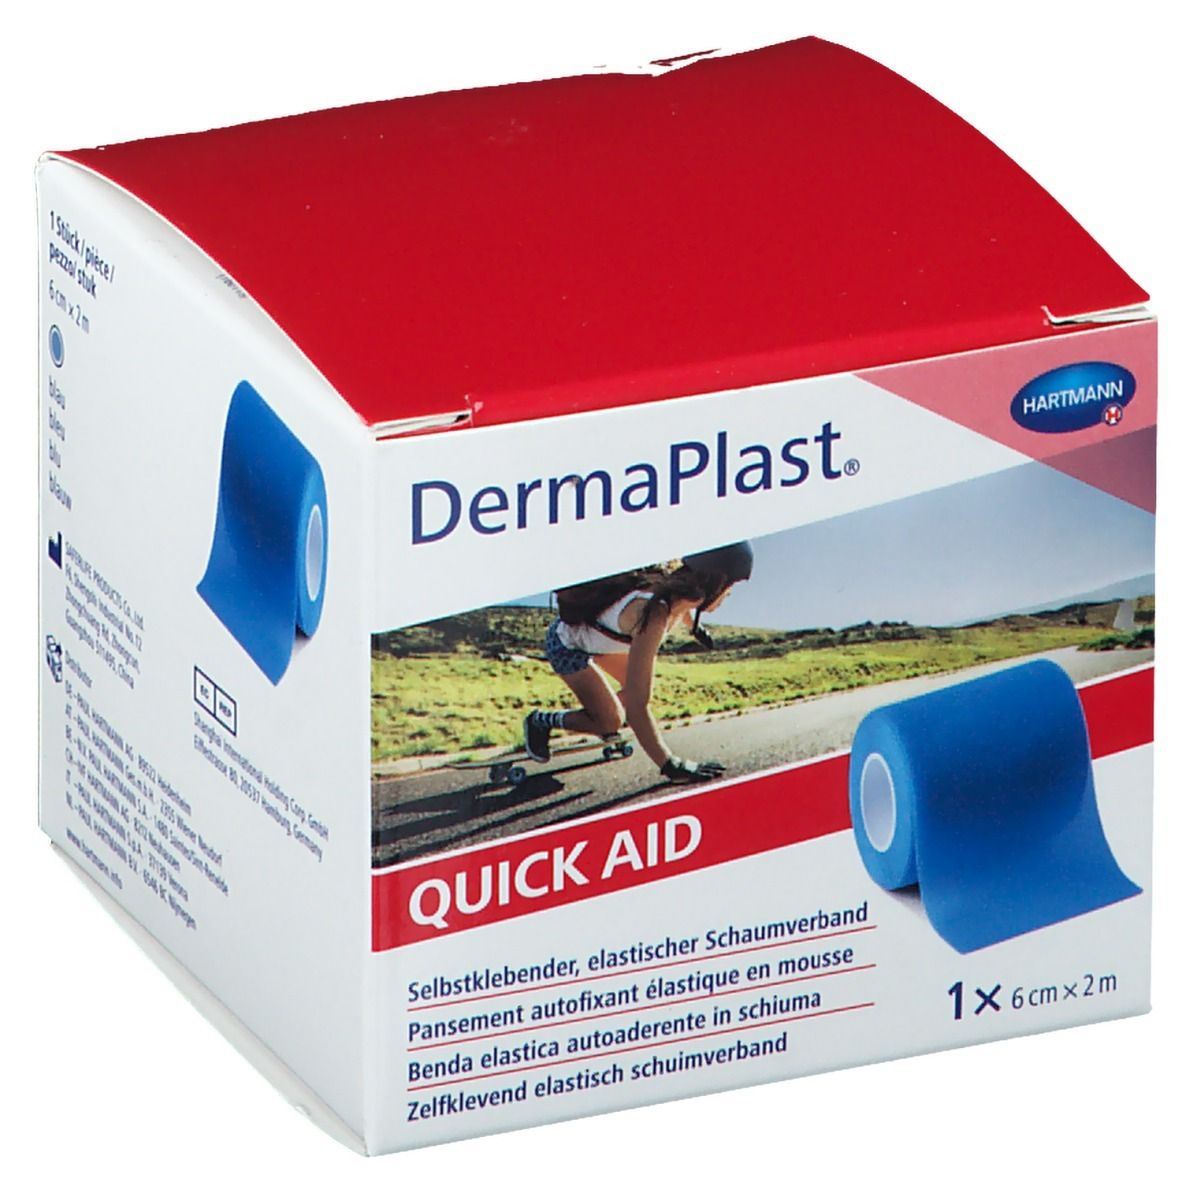 DermaPlast® Quick Aid selbstklebender elastischert Schaumverband  6 cm x 2 m